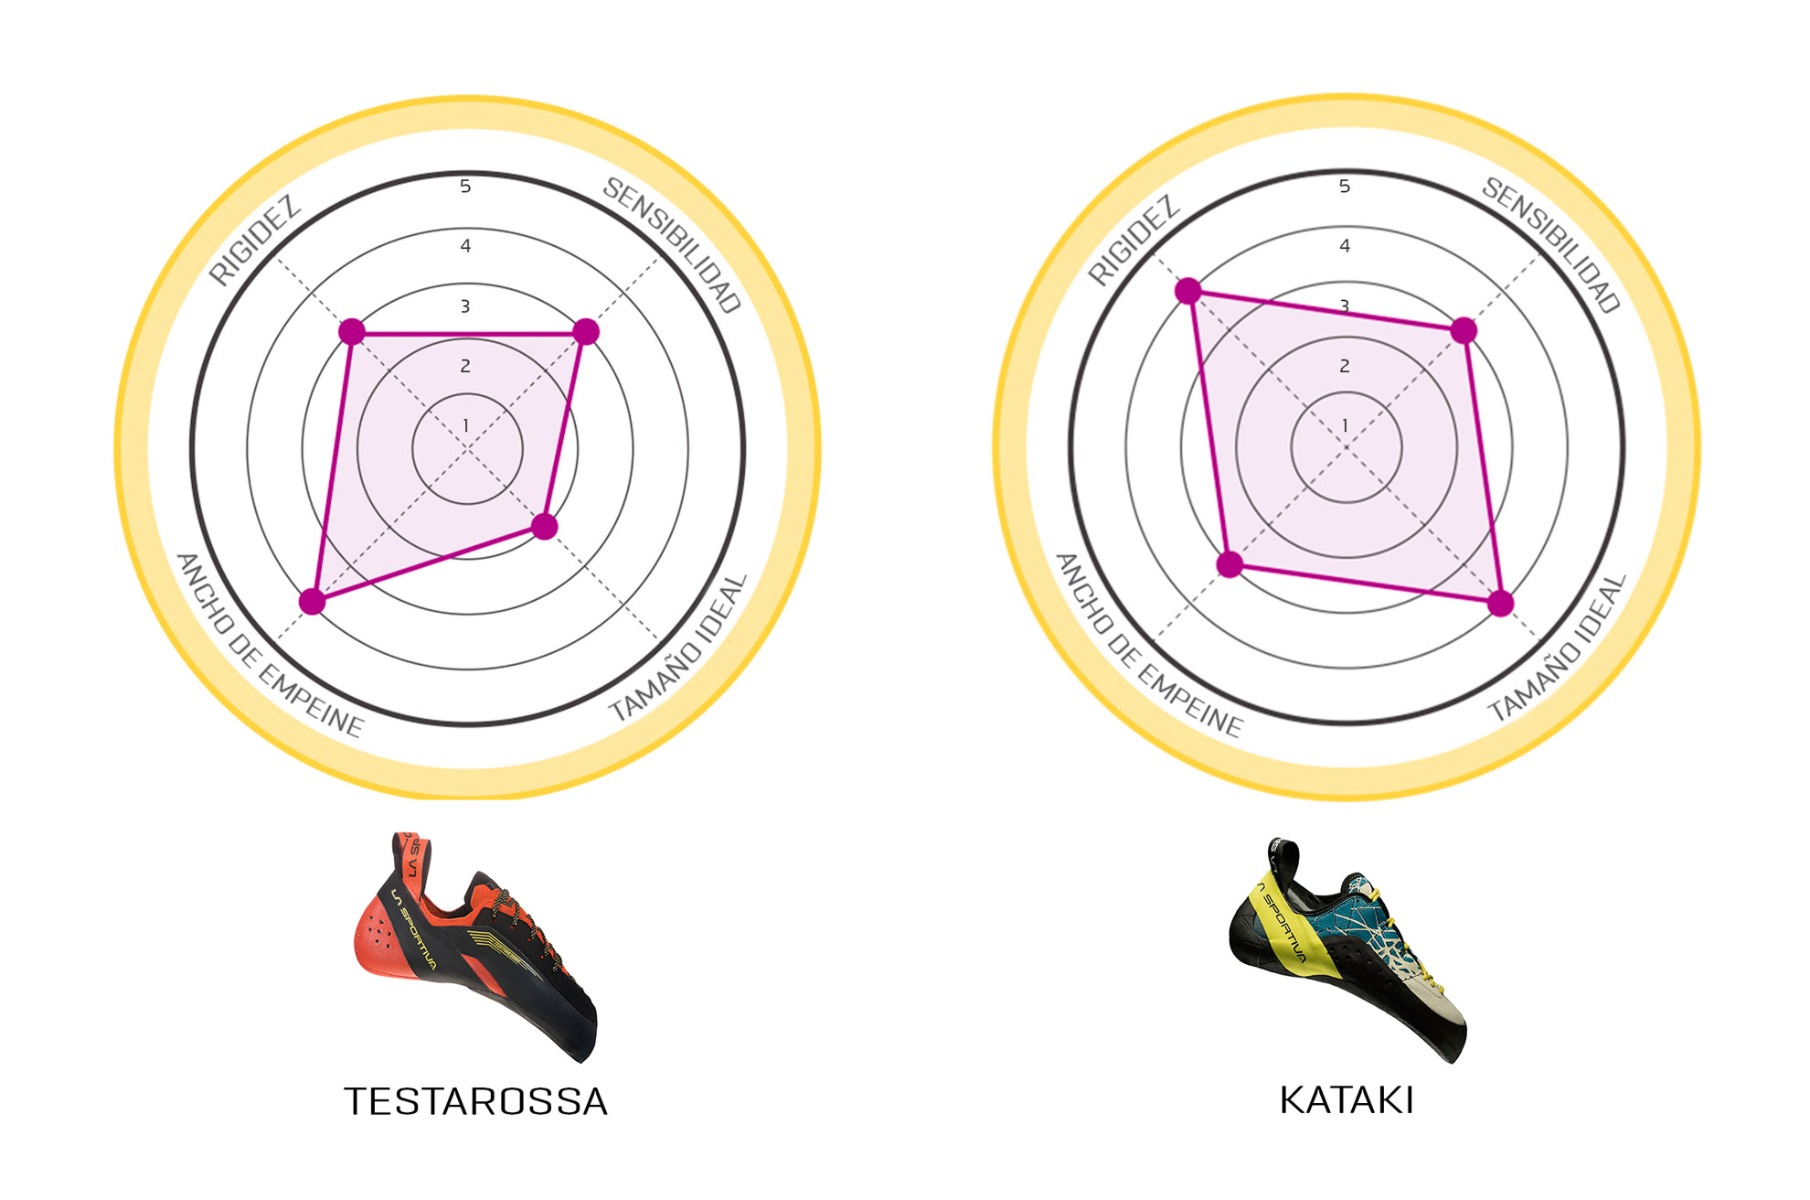 Grafico para seleccion de zapatillas La Sportiva